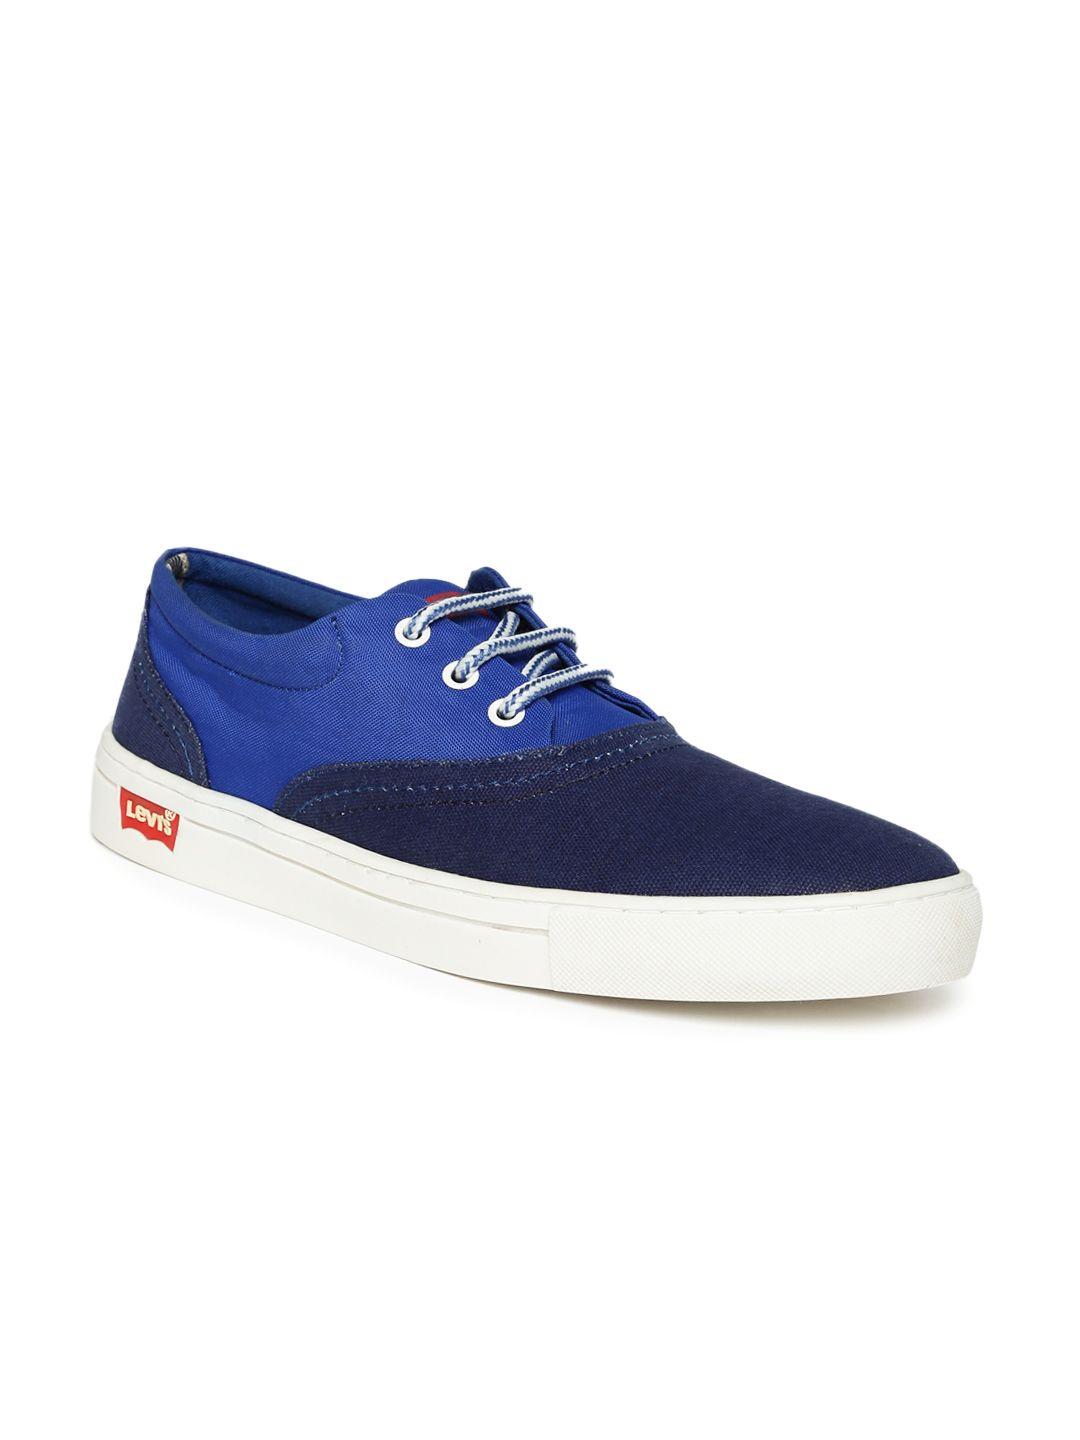 levis men blue colourblocked sneakers